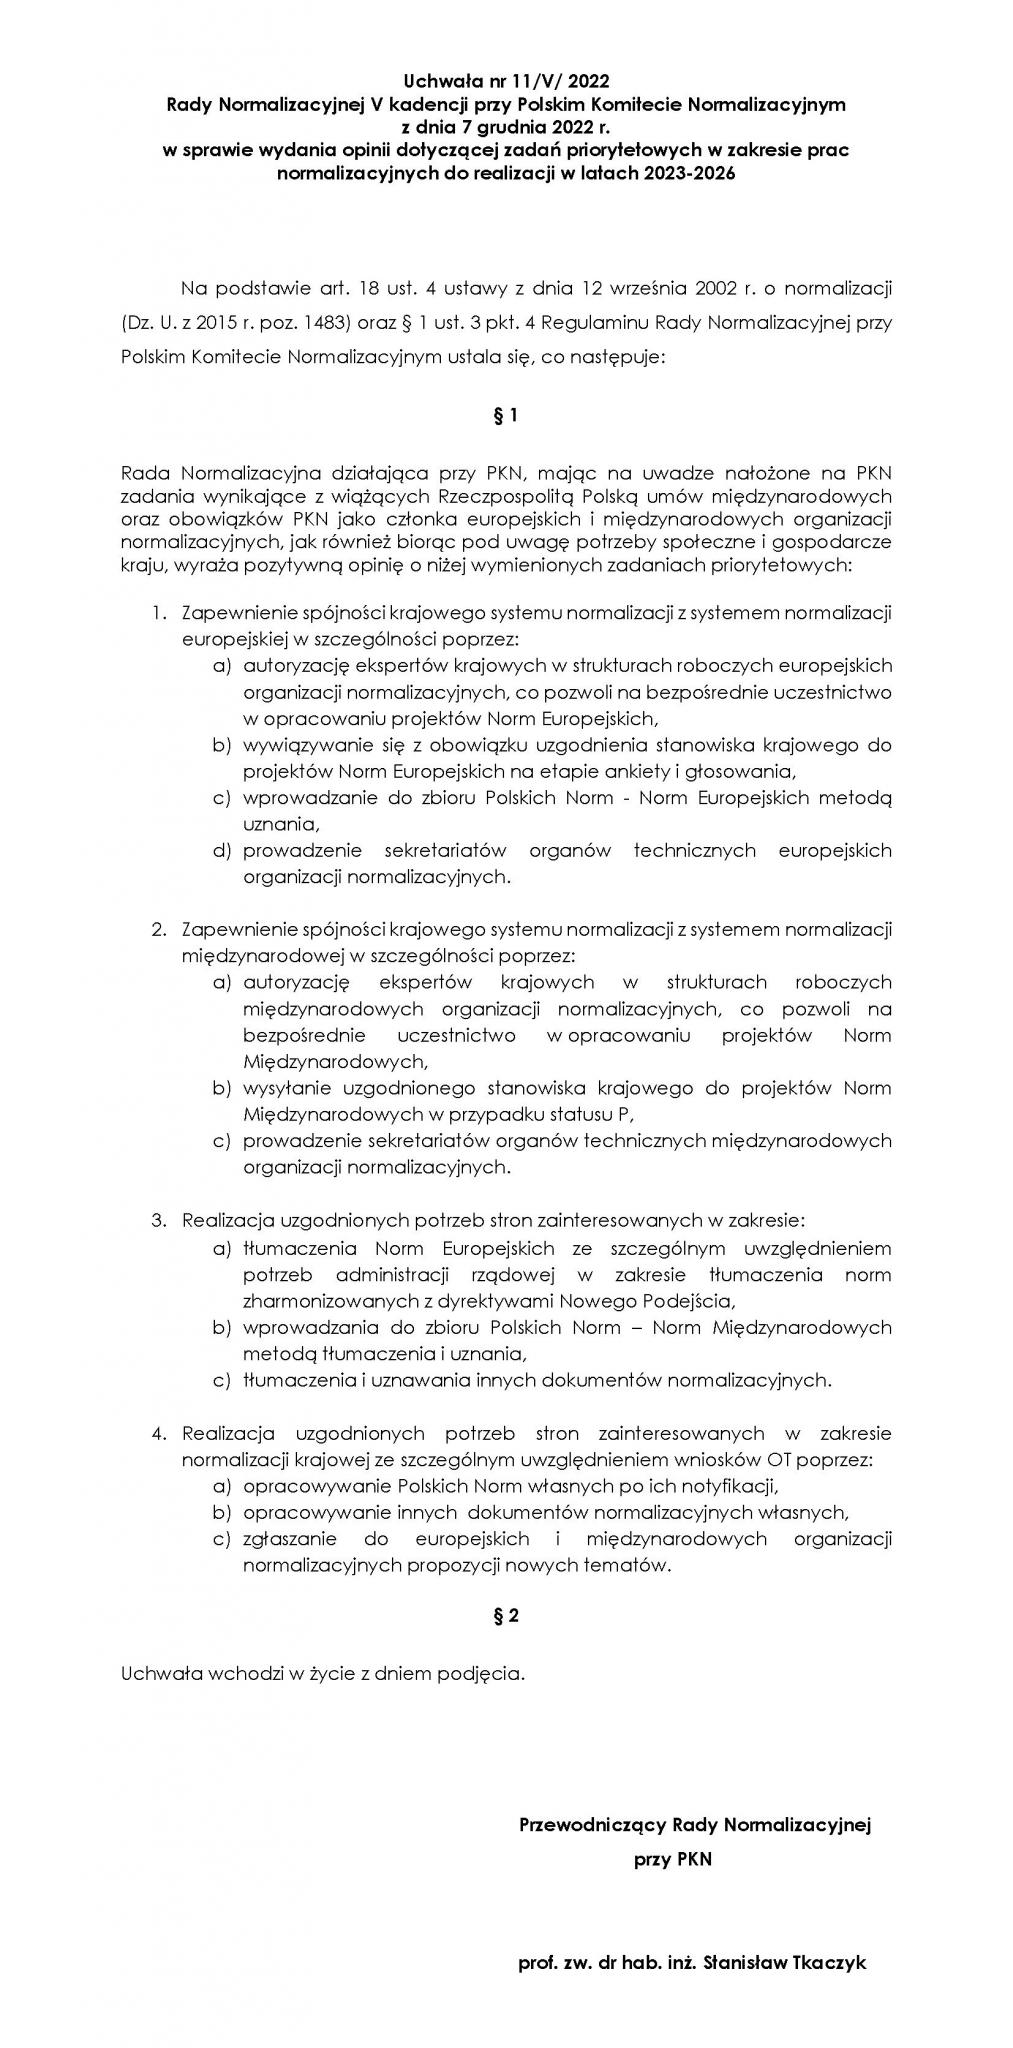 Print screen pierwszej strony dokumentu Uchwała nr 11/V/2022 Rady Normalizacyjnej III kadencji przy Polskim Komitecie Normalizacyjnym z dnia 7 grudnia 2023 r. w sprawie wydania opinii dotyczącej zadań priorytetowych w zakresie prac normalizacyjnych do realizacji w latach 2023-2026 otwierający całość tego dokumentu w formie PDF